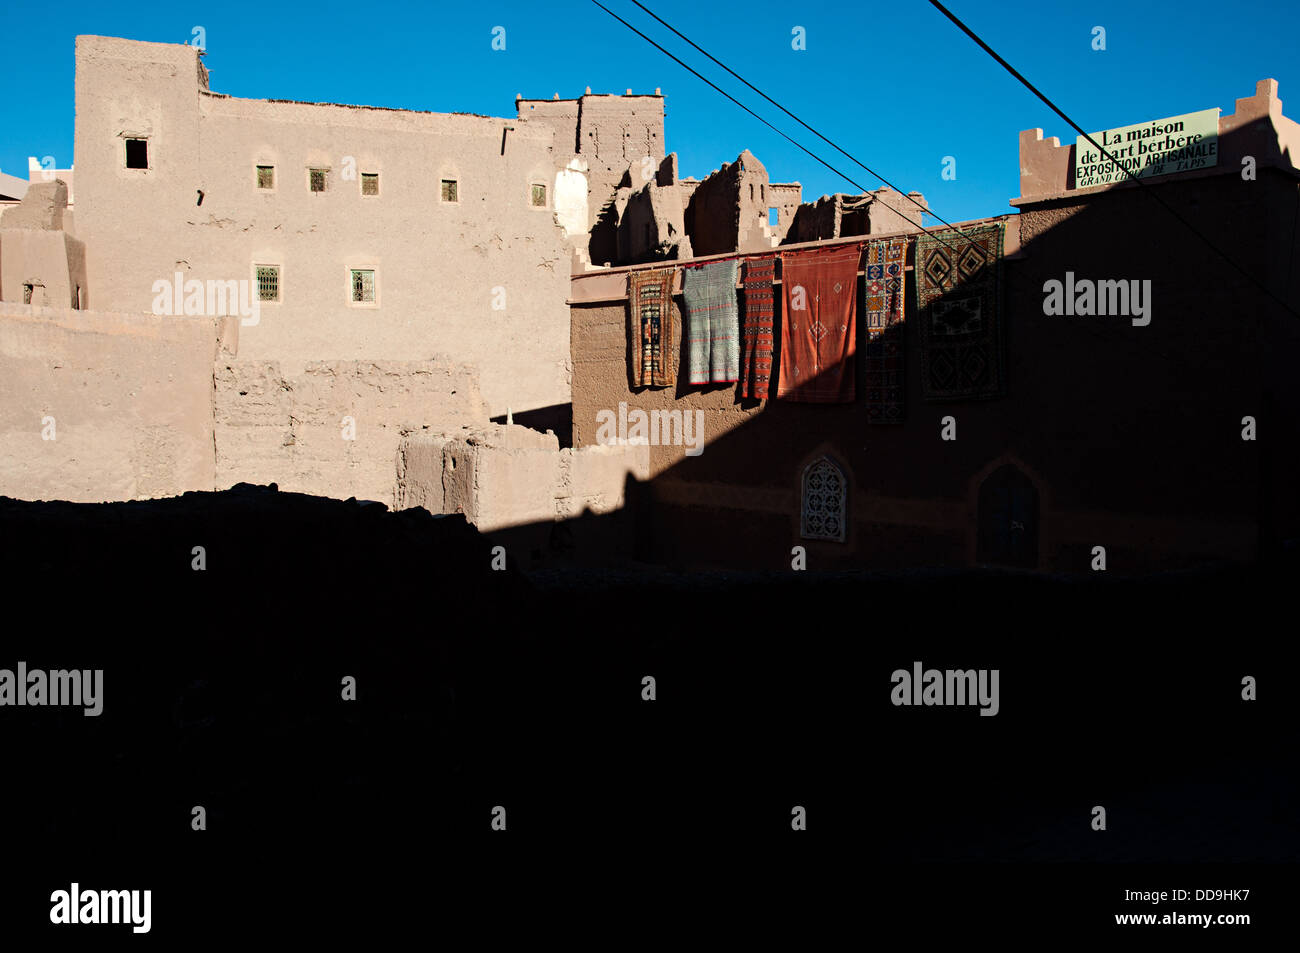 Avis de kasbah de Taourirt du mellah, Ouarzazate, Maroc Banque D'Images